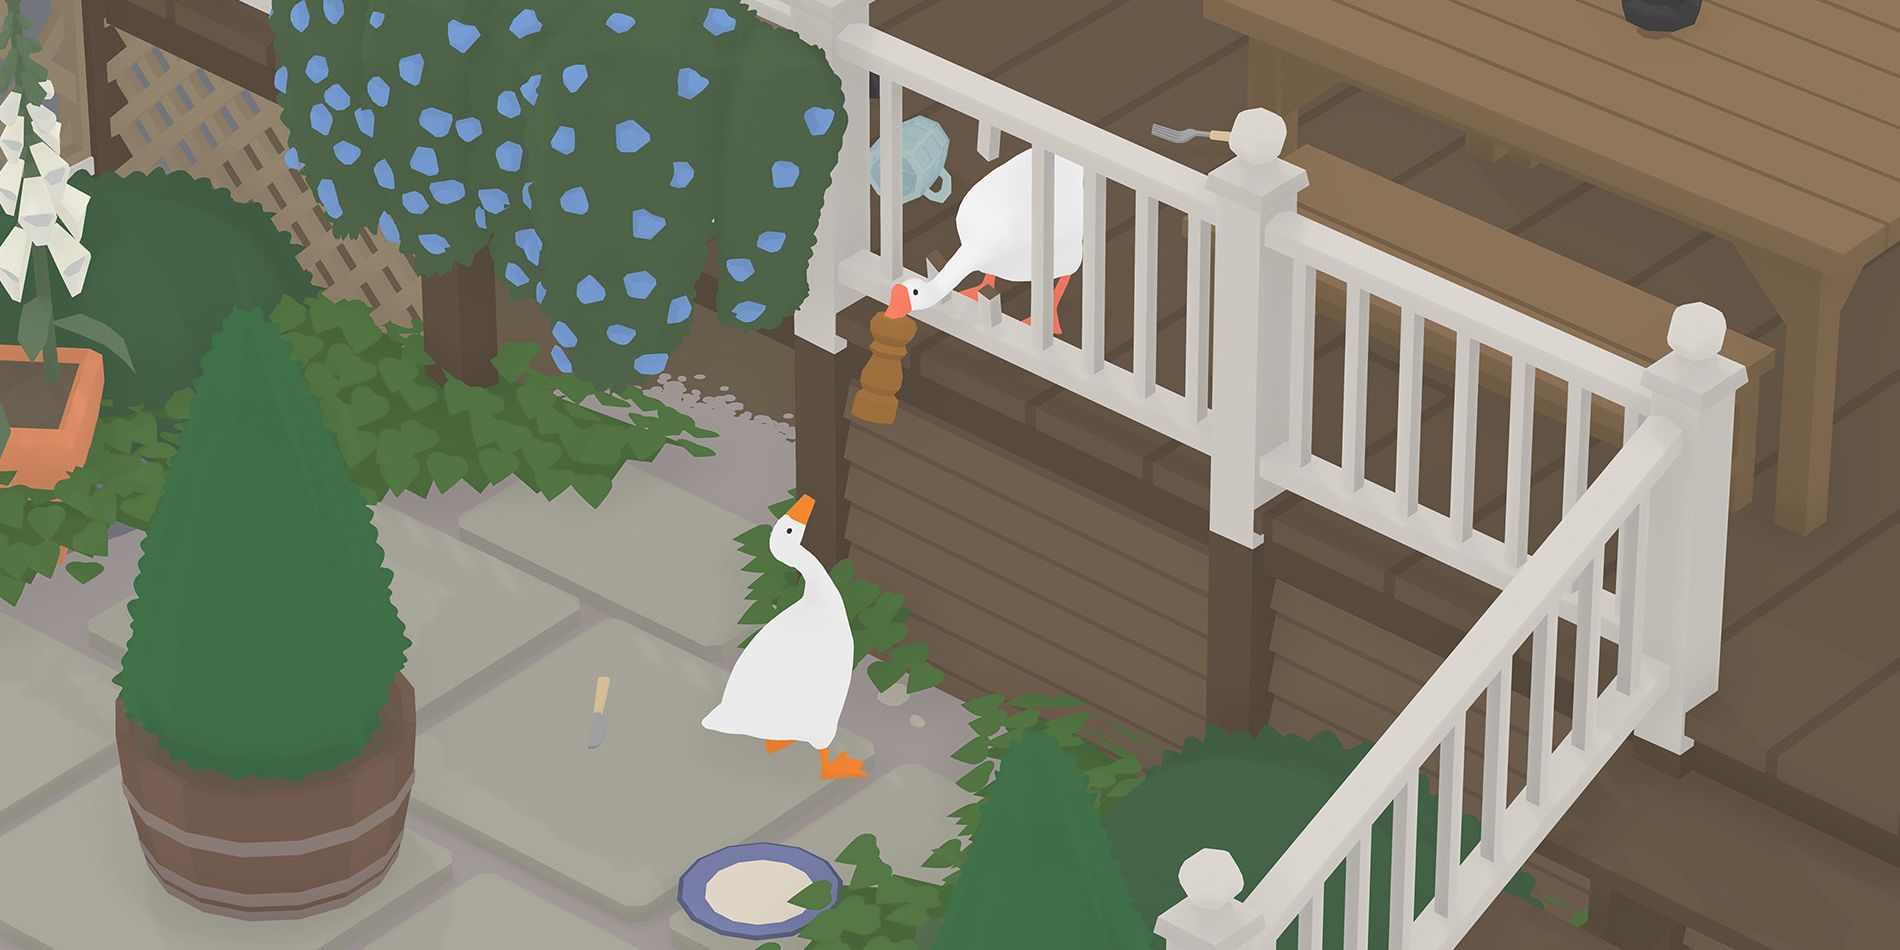 Untitled Goose Game receberá multiplayer local e chegará no